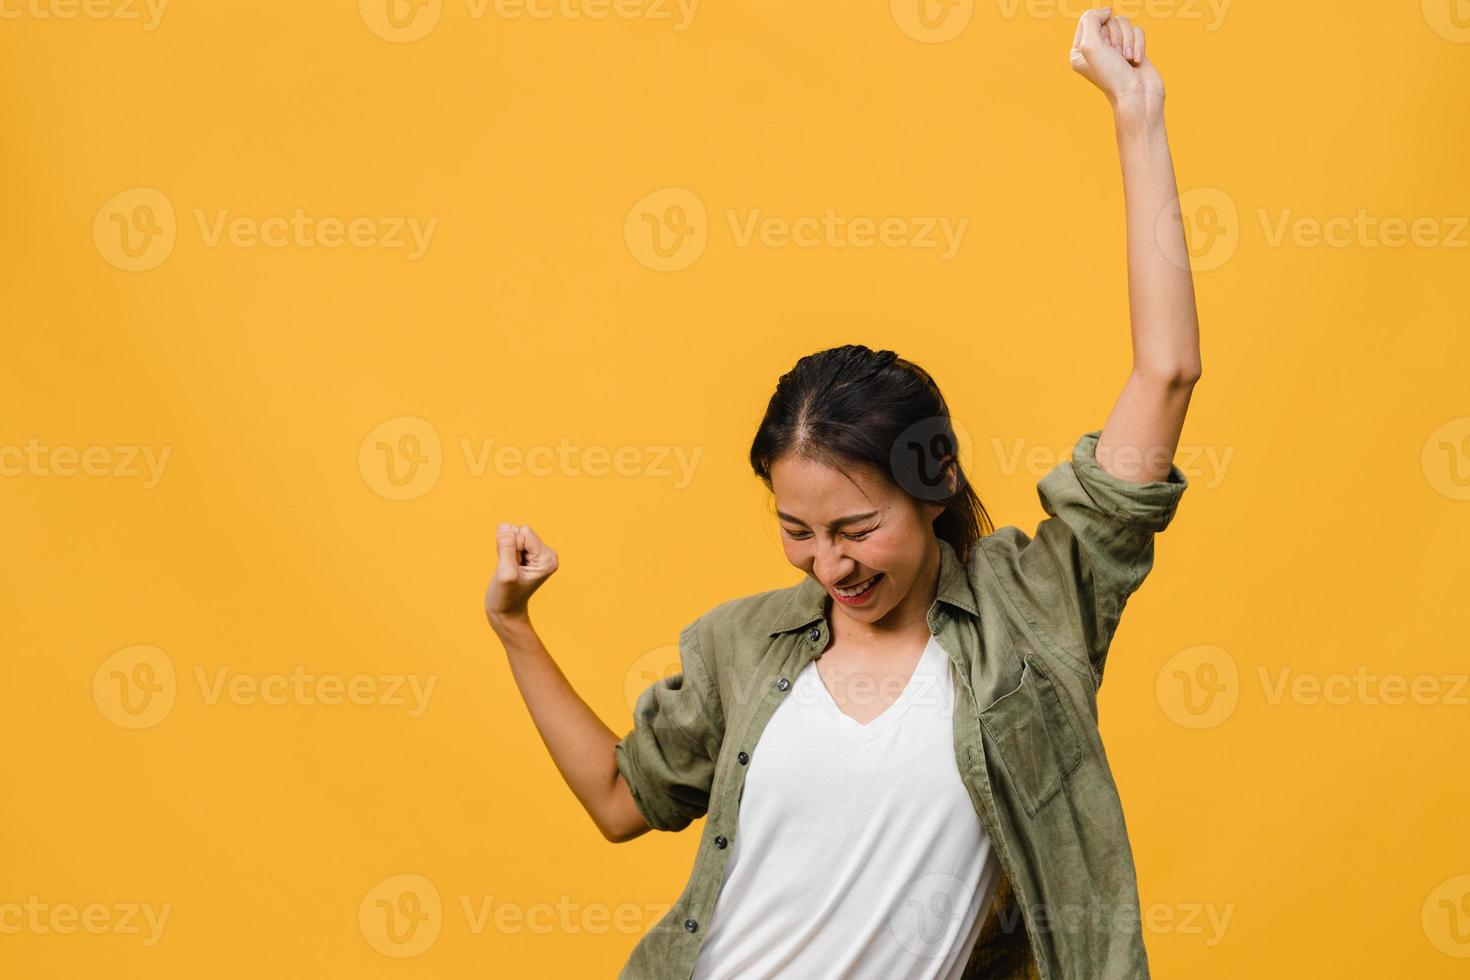 jonge aziatische dame met positieve uitdrukking, vrolijk en opwindend, gekleed in casual doek over gele achtergrond met lege ruimte. gelukkige schattige blije vrouw verheugt zich over succes. gezichtsuitdrukking concept. foto